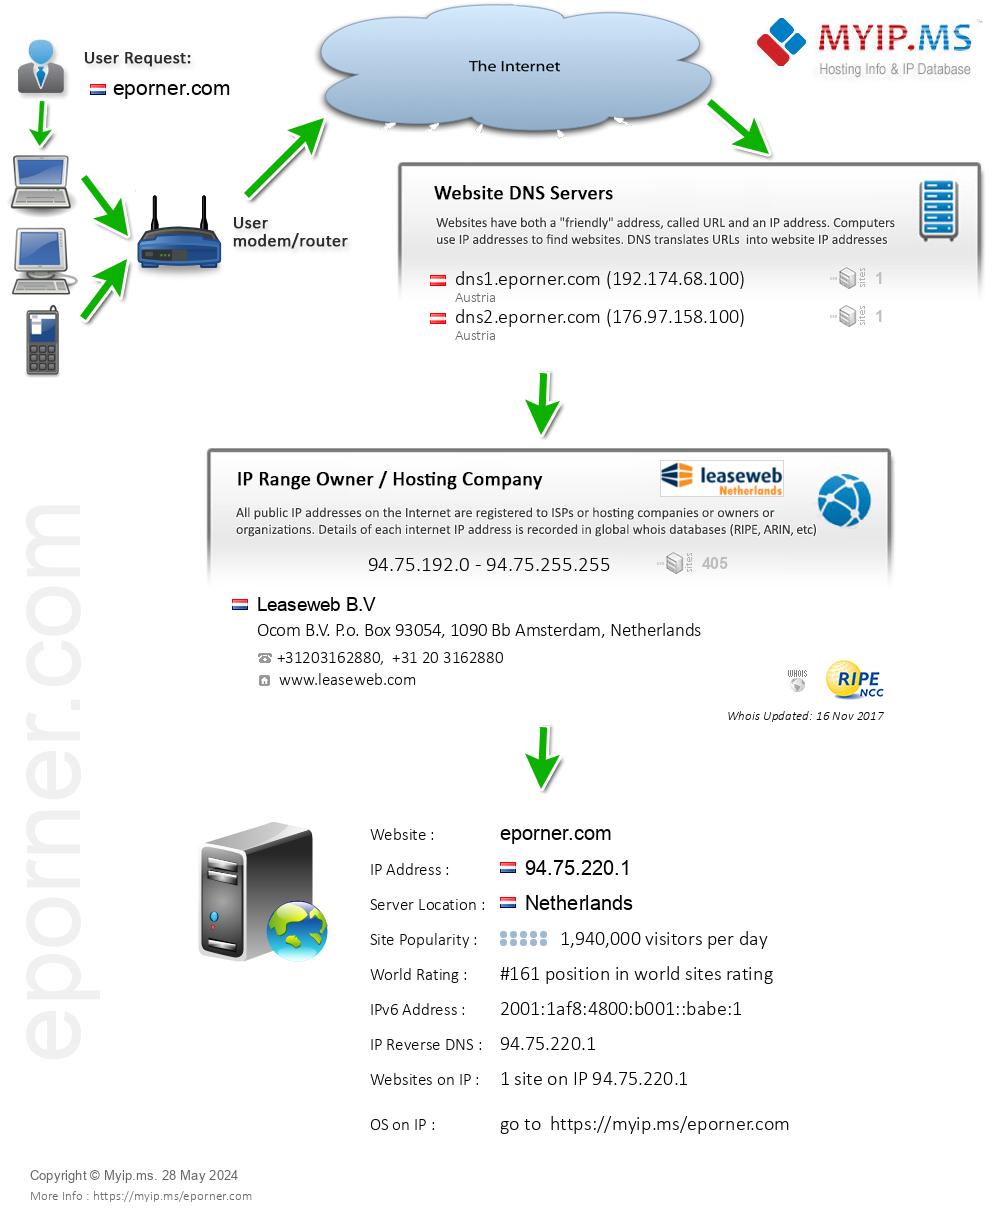 Eporner.com - Website Hosting Visual IP Diagram